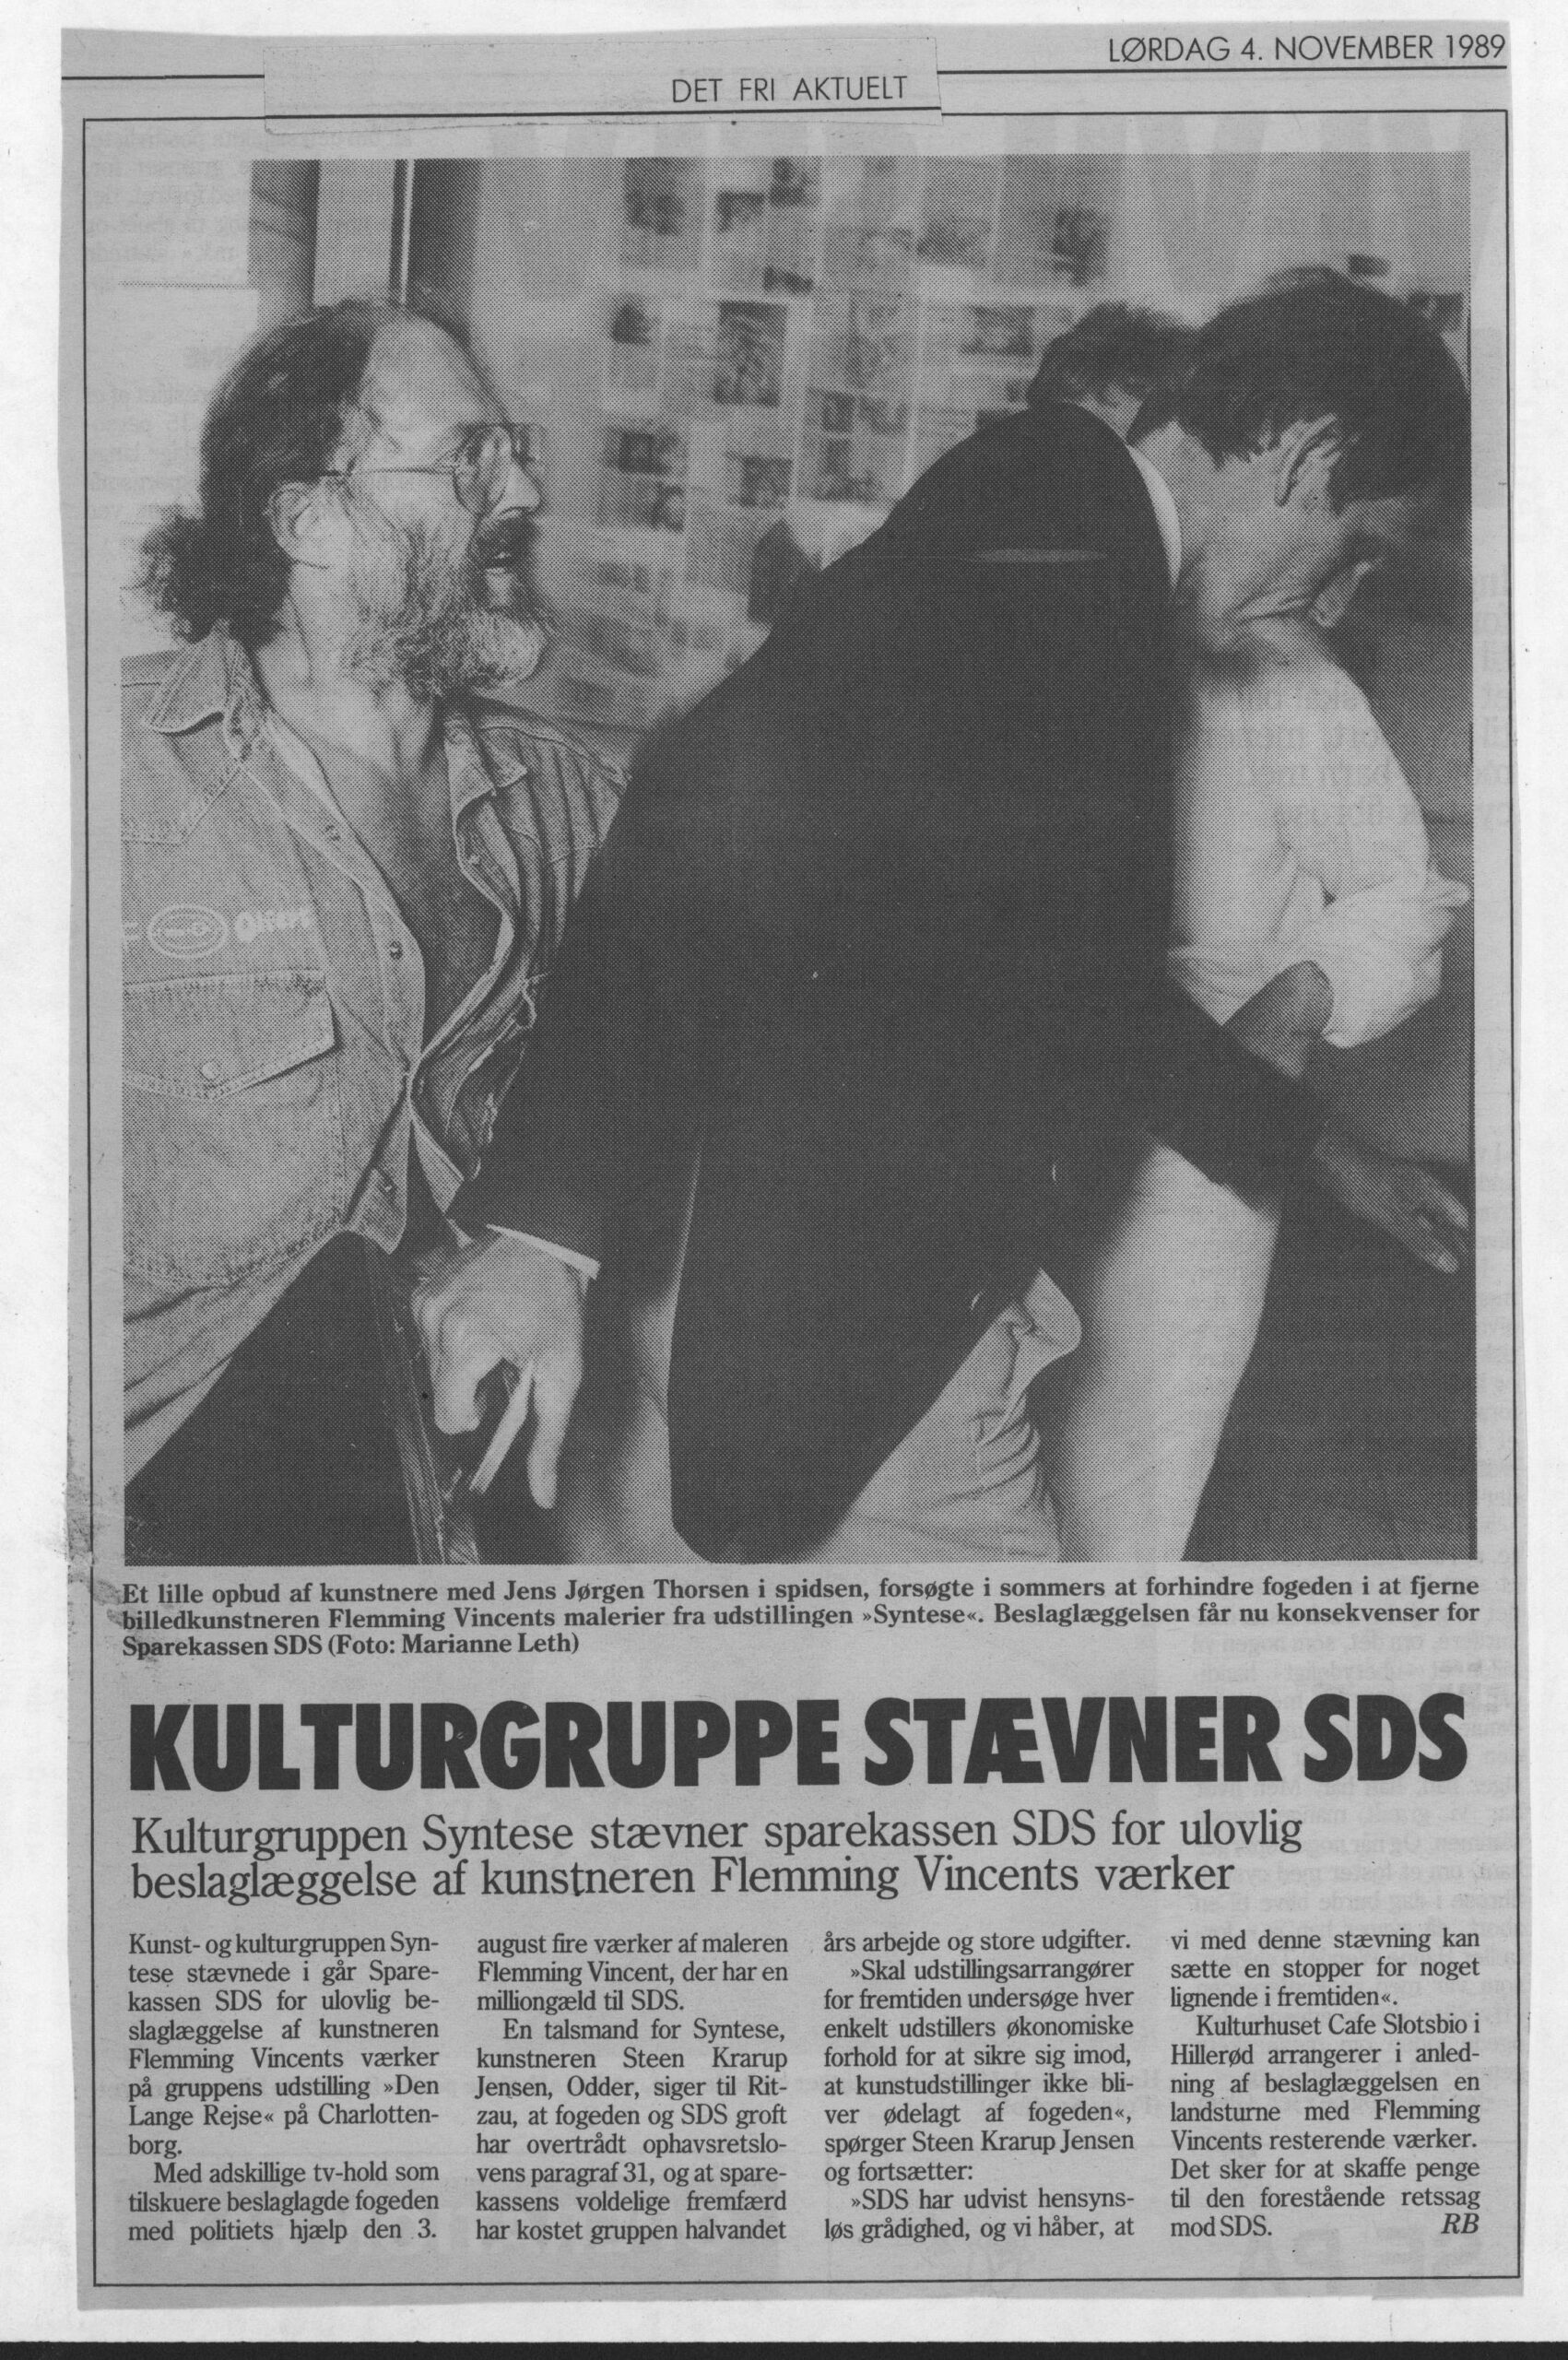 Kulturgruppe stævner SDS. Omtale (Retssag. Den lange rejse. Charlottenborg 1989, København). R.B. Det Fri Aktuelt.